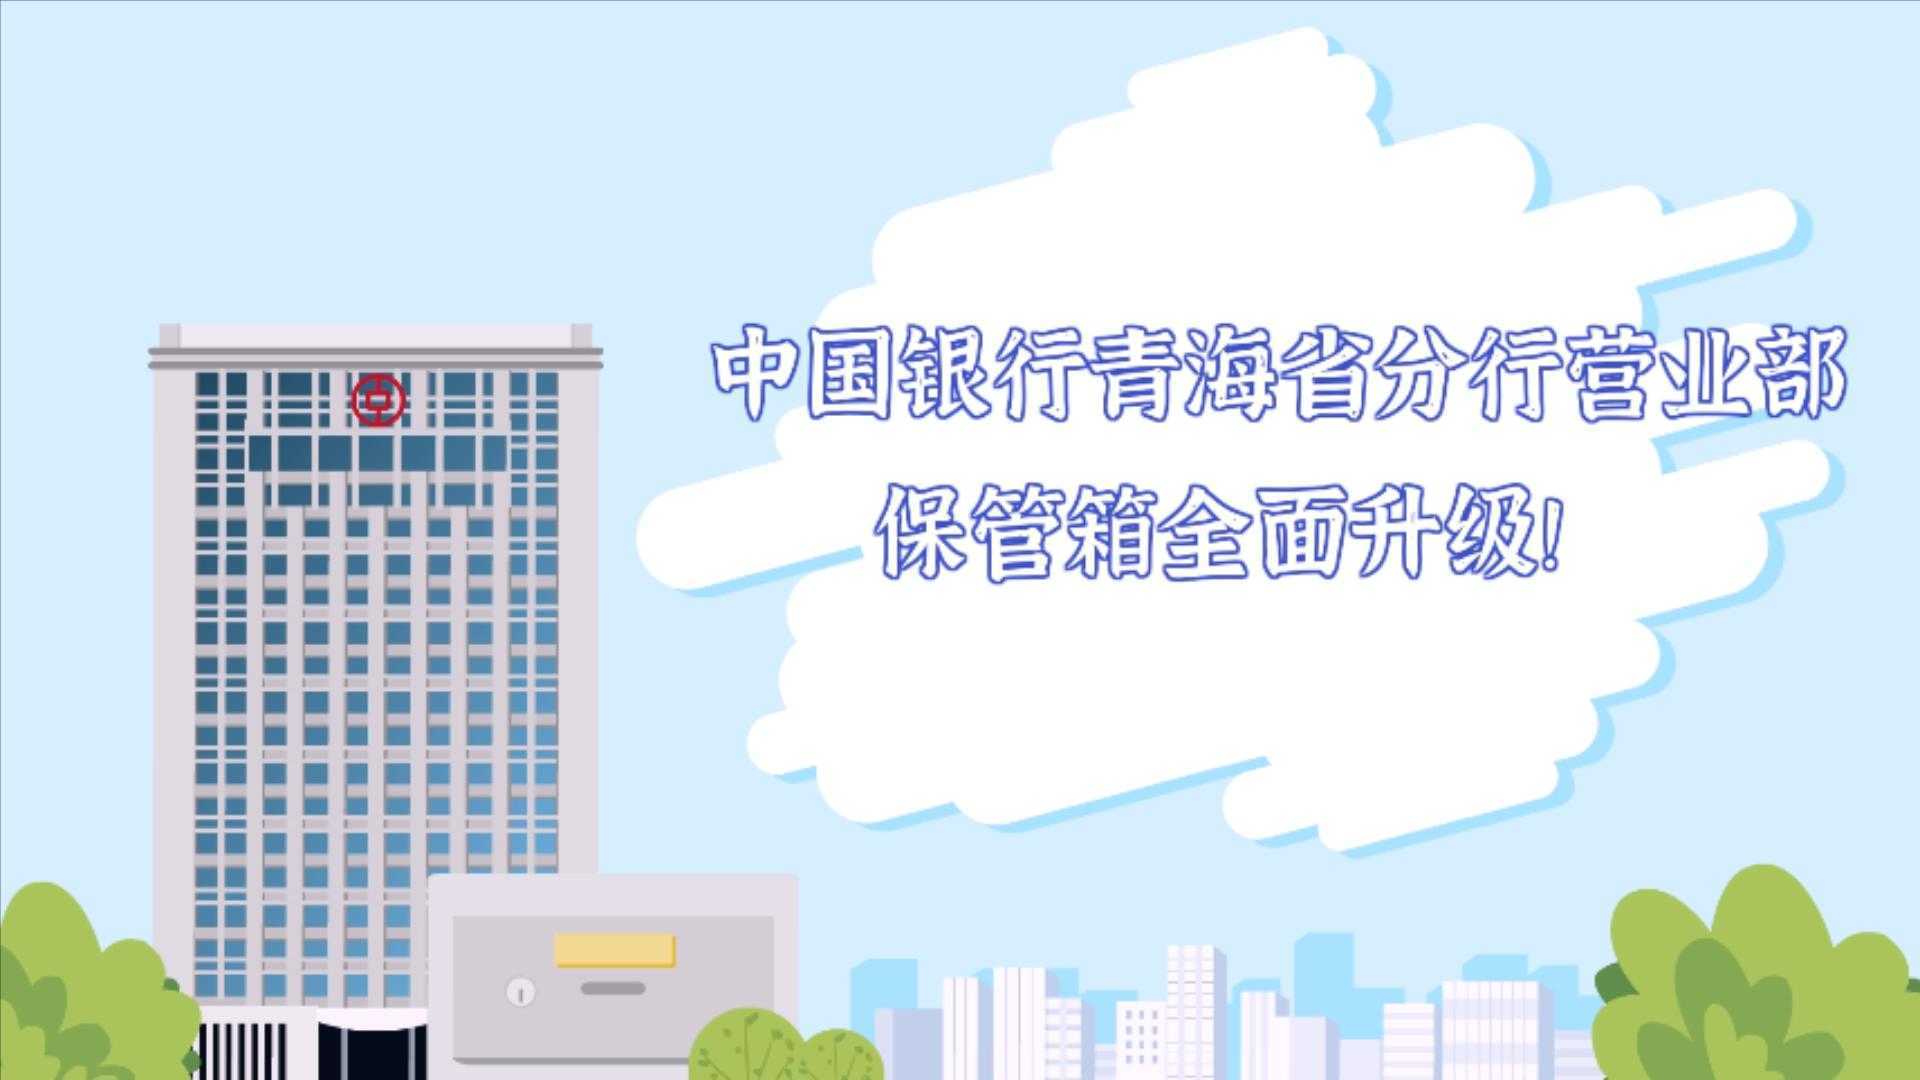 【智能组合保管箱业务动画】中国银行青海省分行